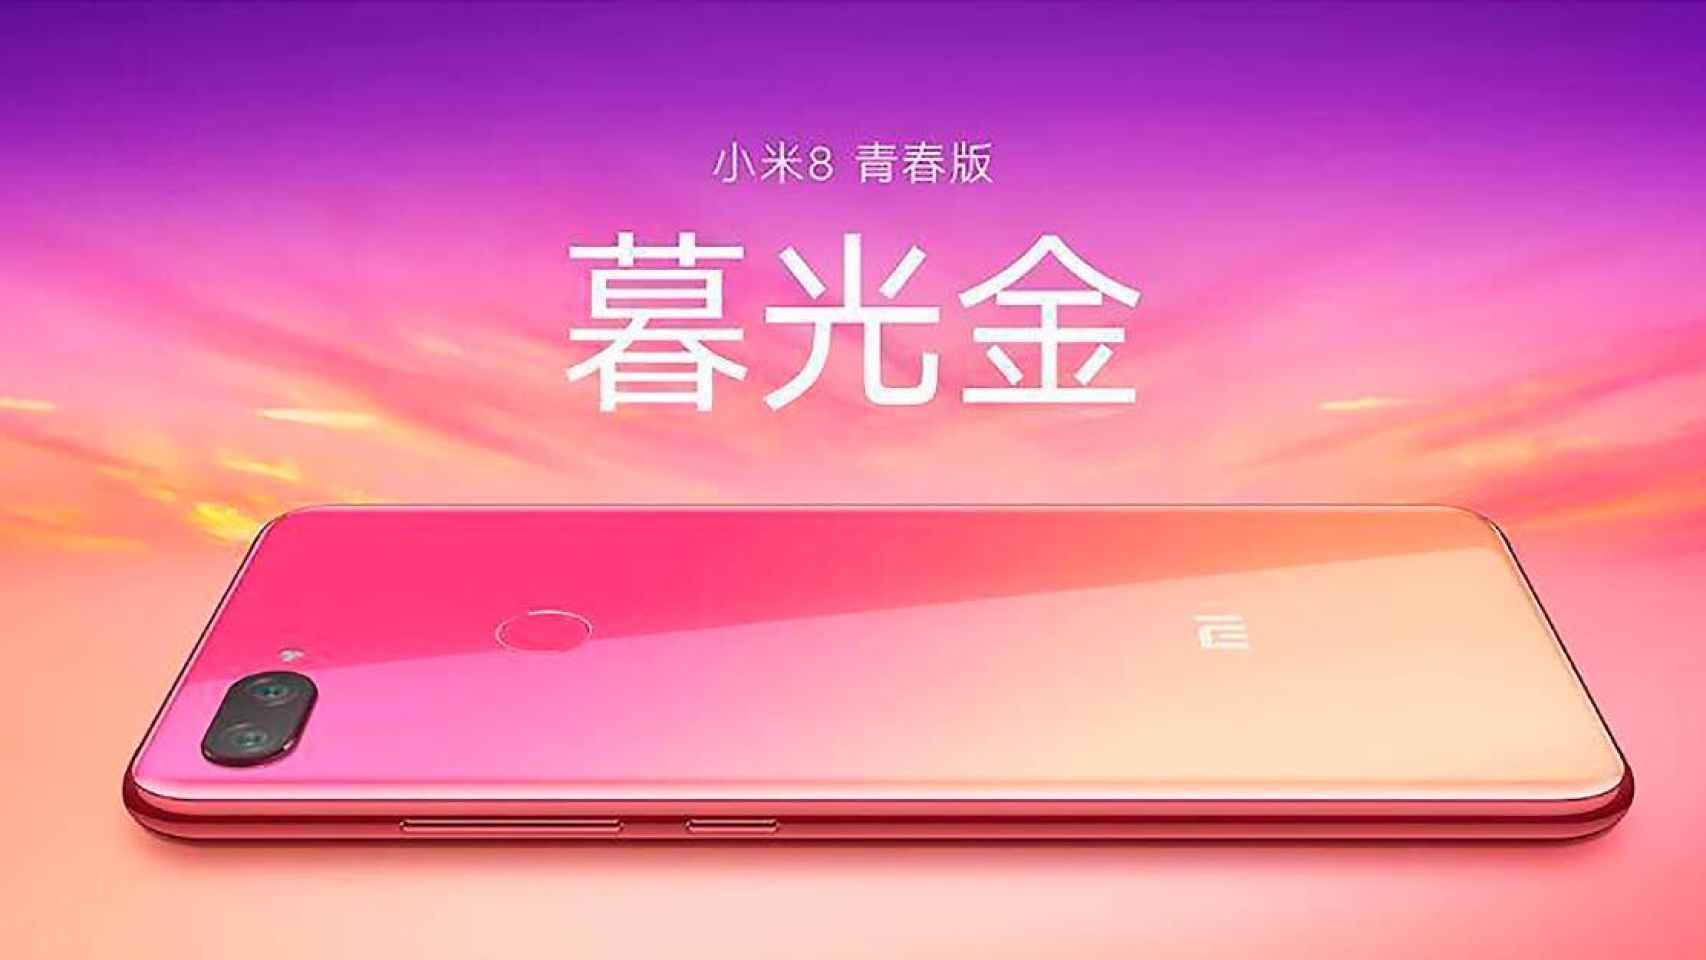 Xiaomi confirma el espectacular Mi 8 Youth Edition con degradado